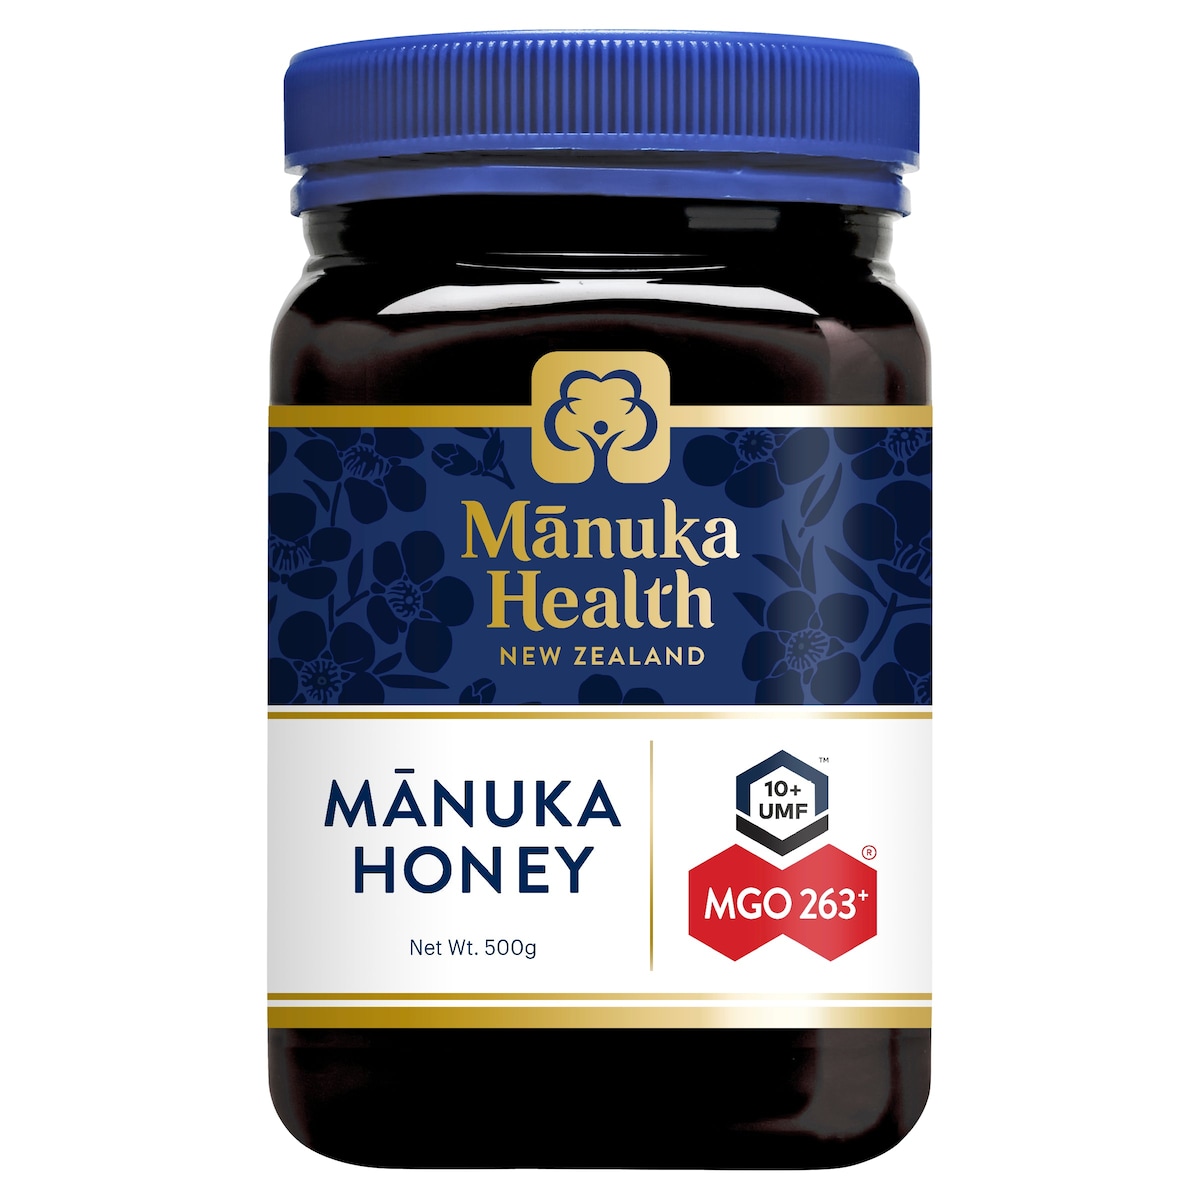 Manuka Health MGO 263+ UMF 10 Manuka Honey 250g